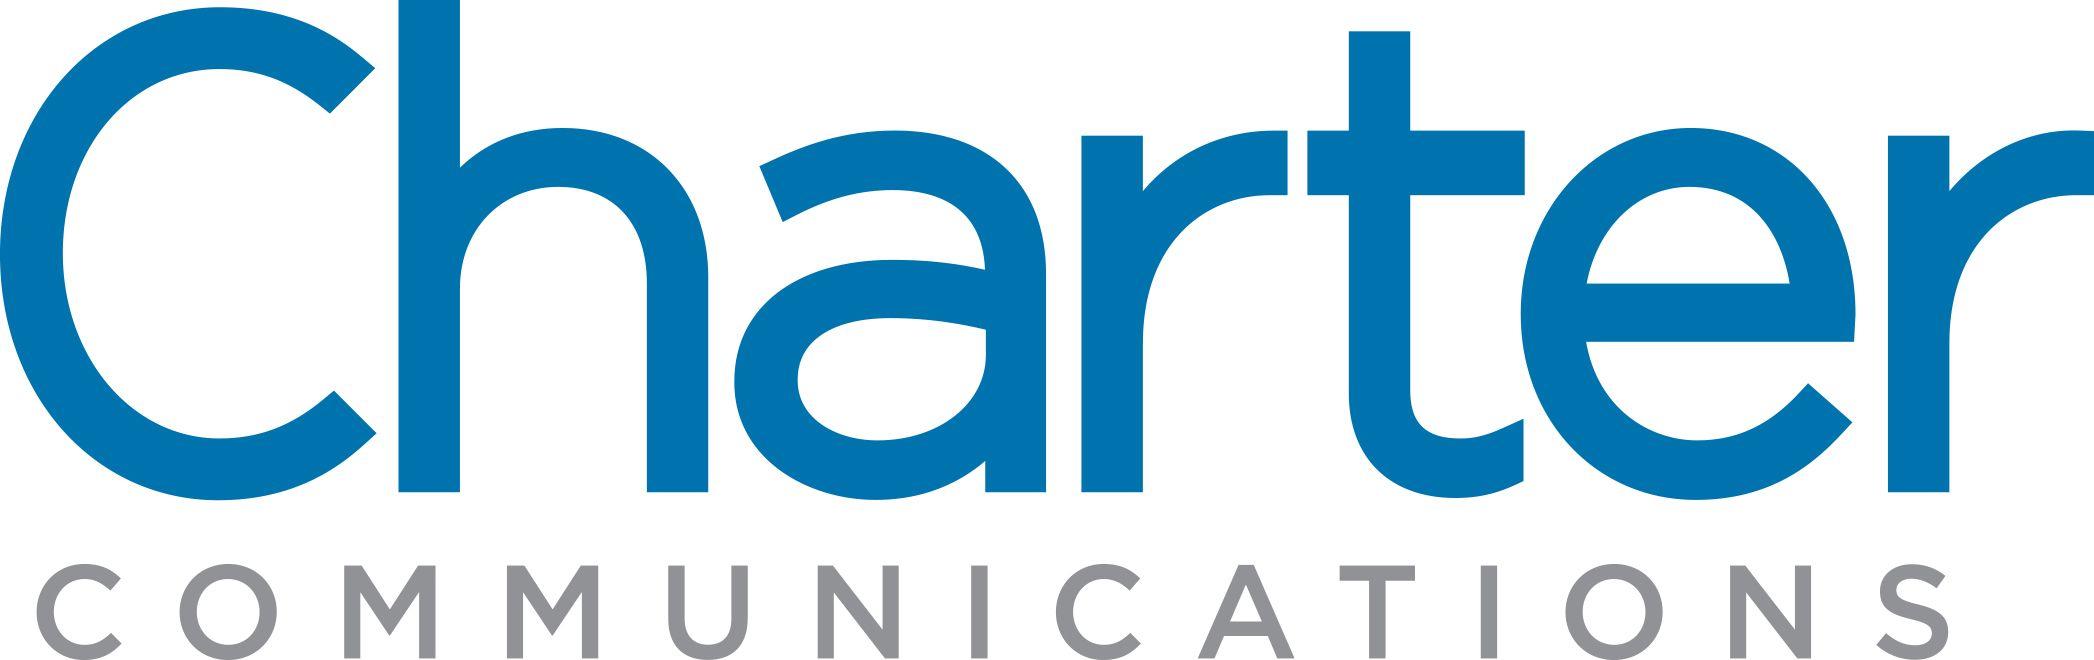 Charter.net Logo - Charter Communications